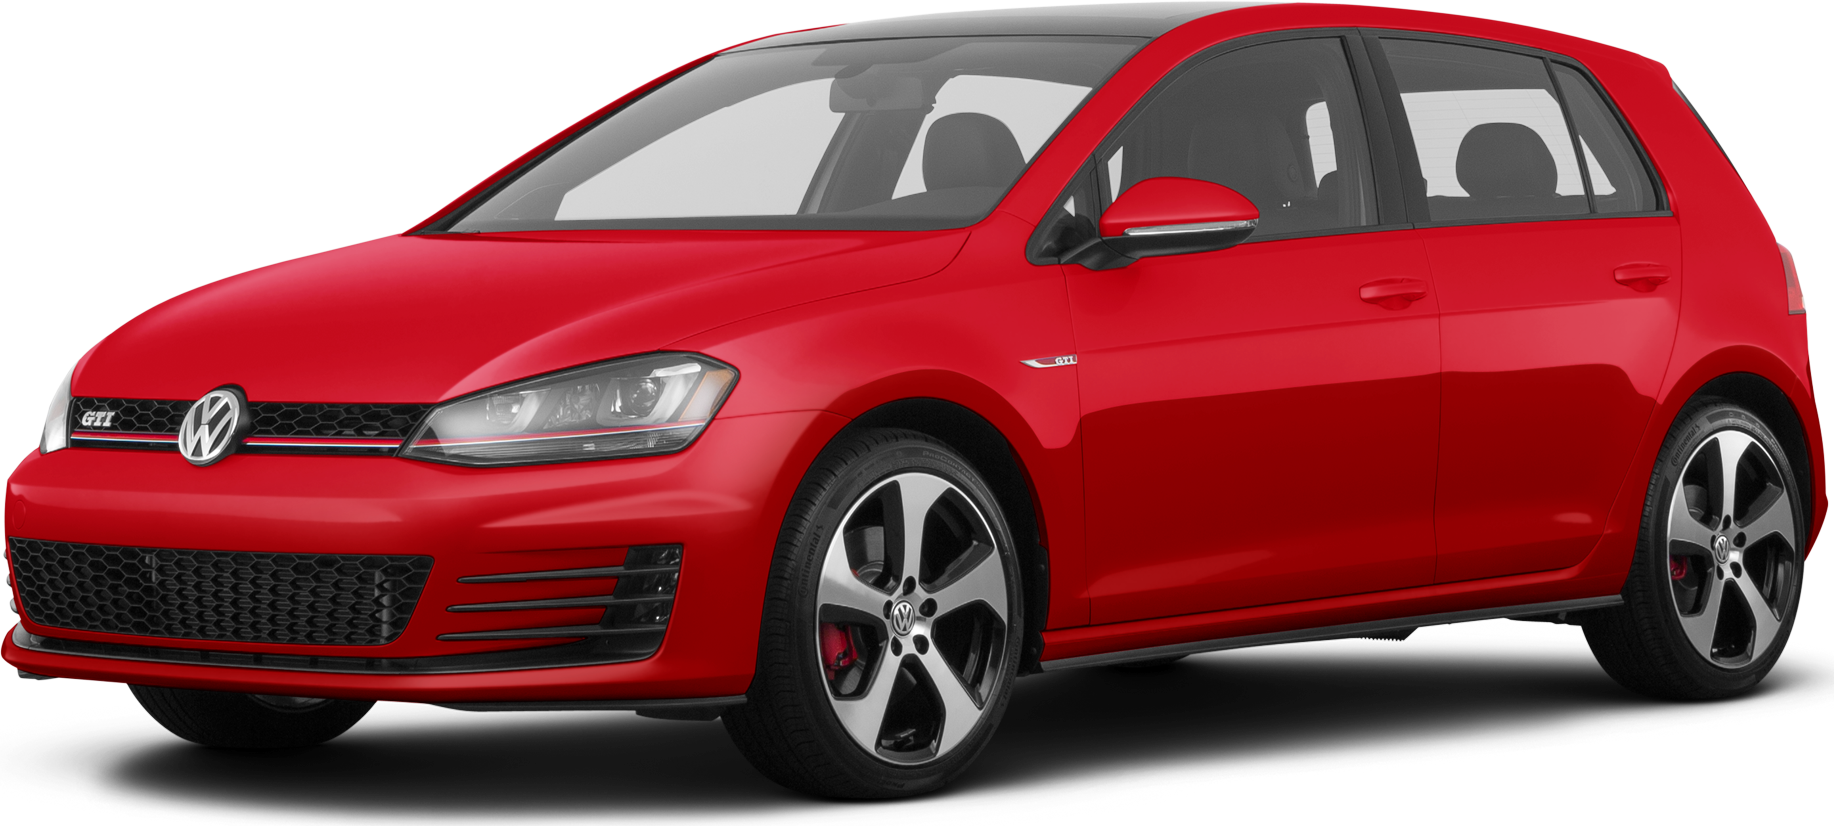 Used 2017 Volkswagen Golf GTI S Hatchback Sedan 4D Prices